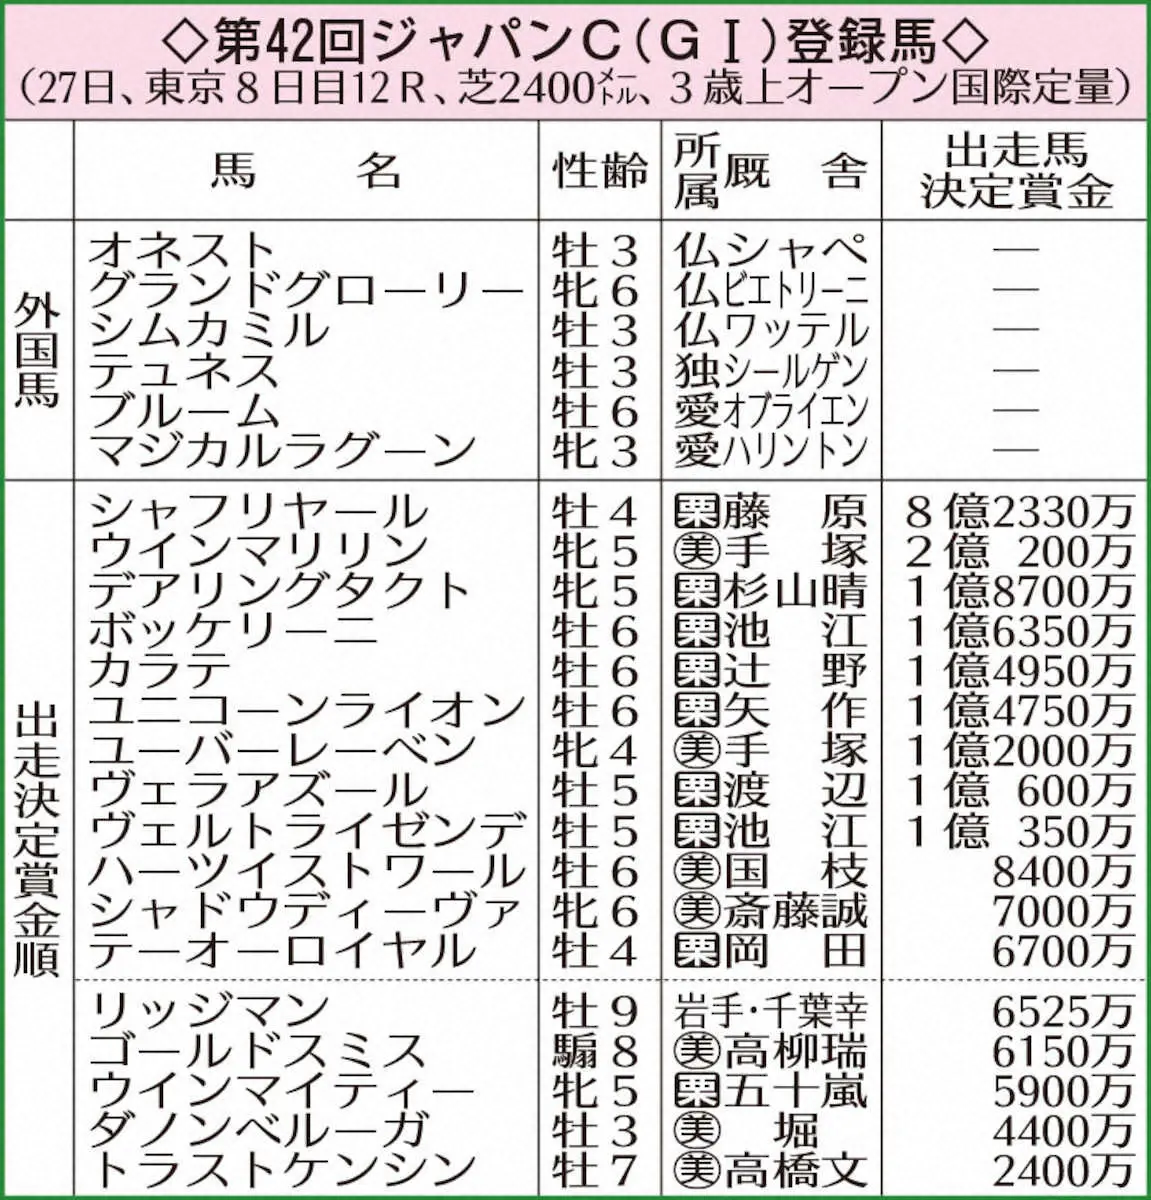 【ジャパンC】外国馬6頭を含む23頭が登録